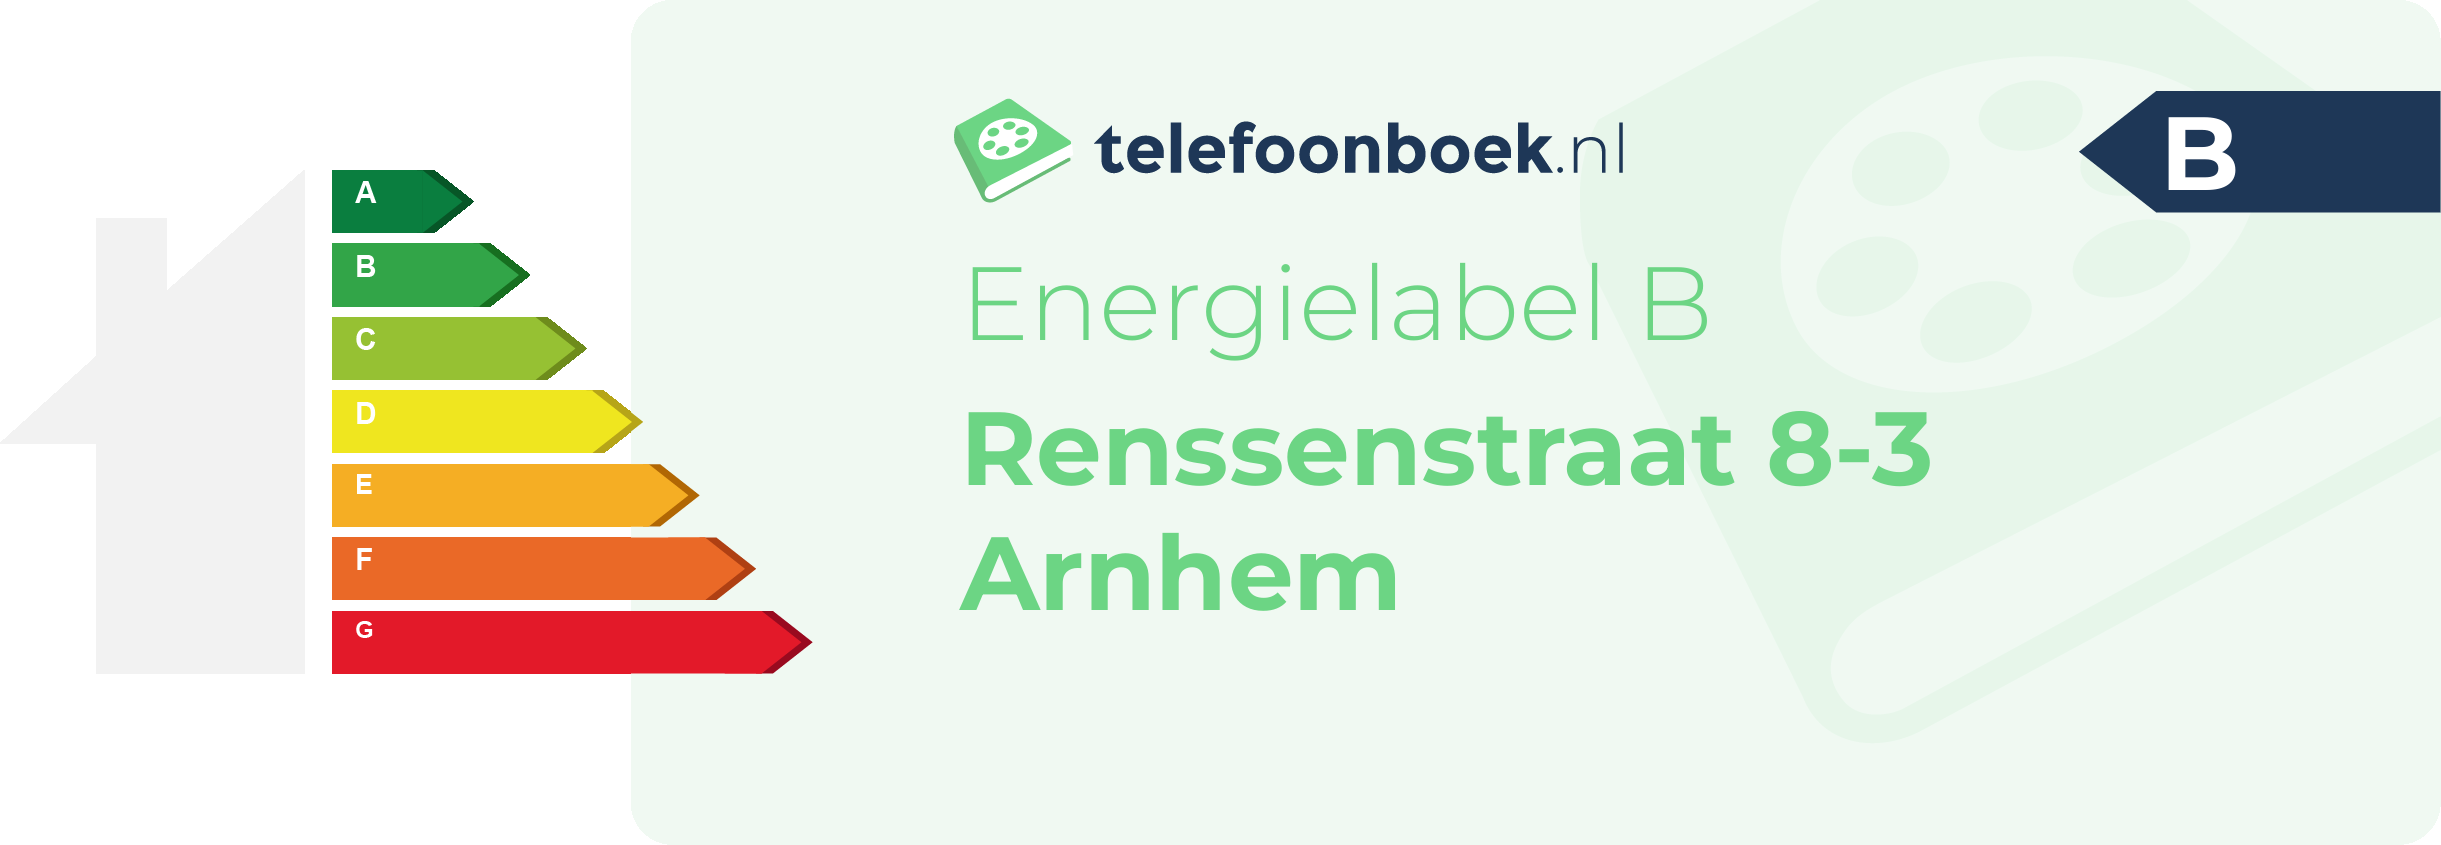 Energielabel Renssenstraat 8-3 Arnhem